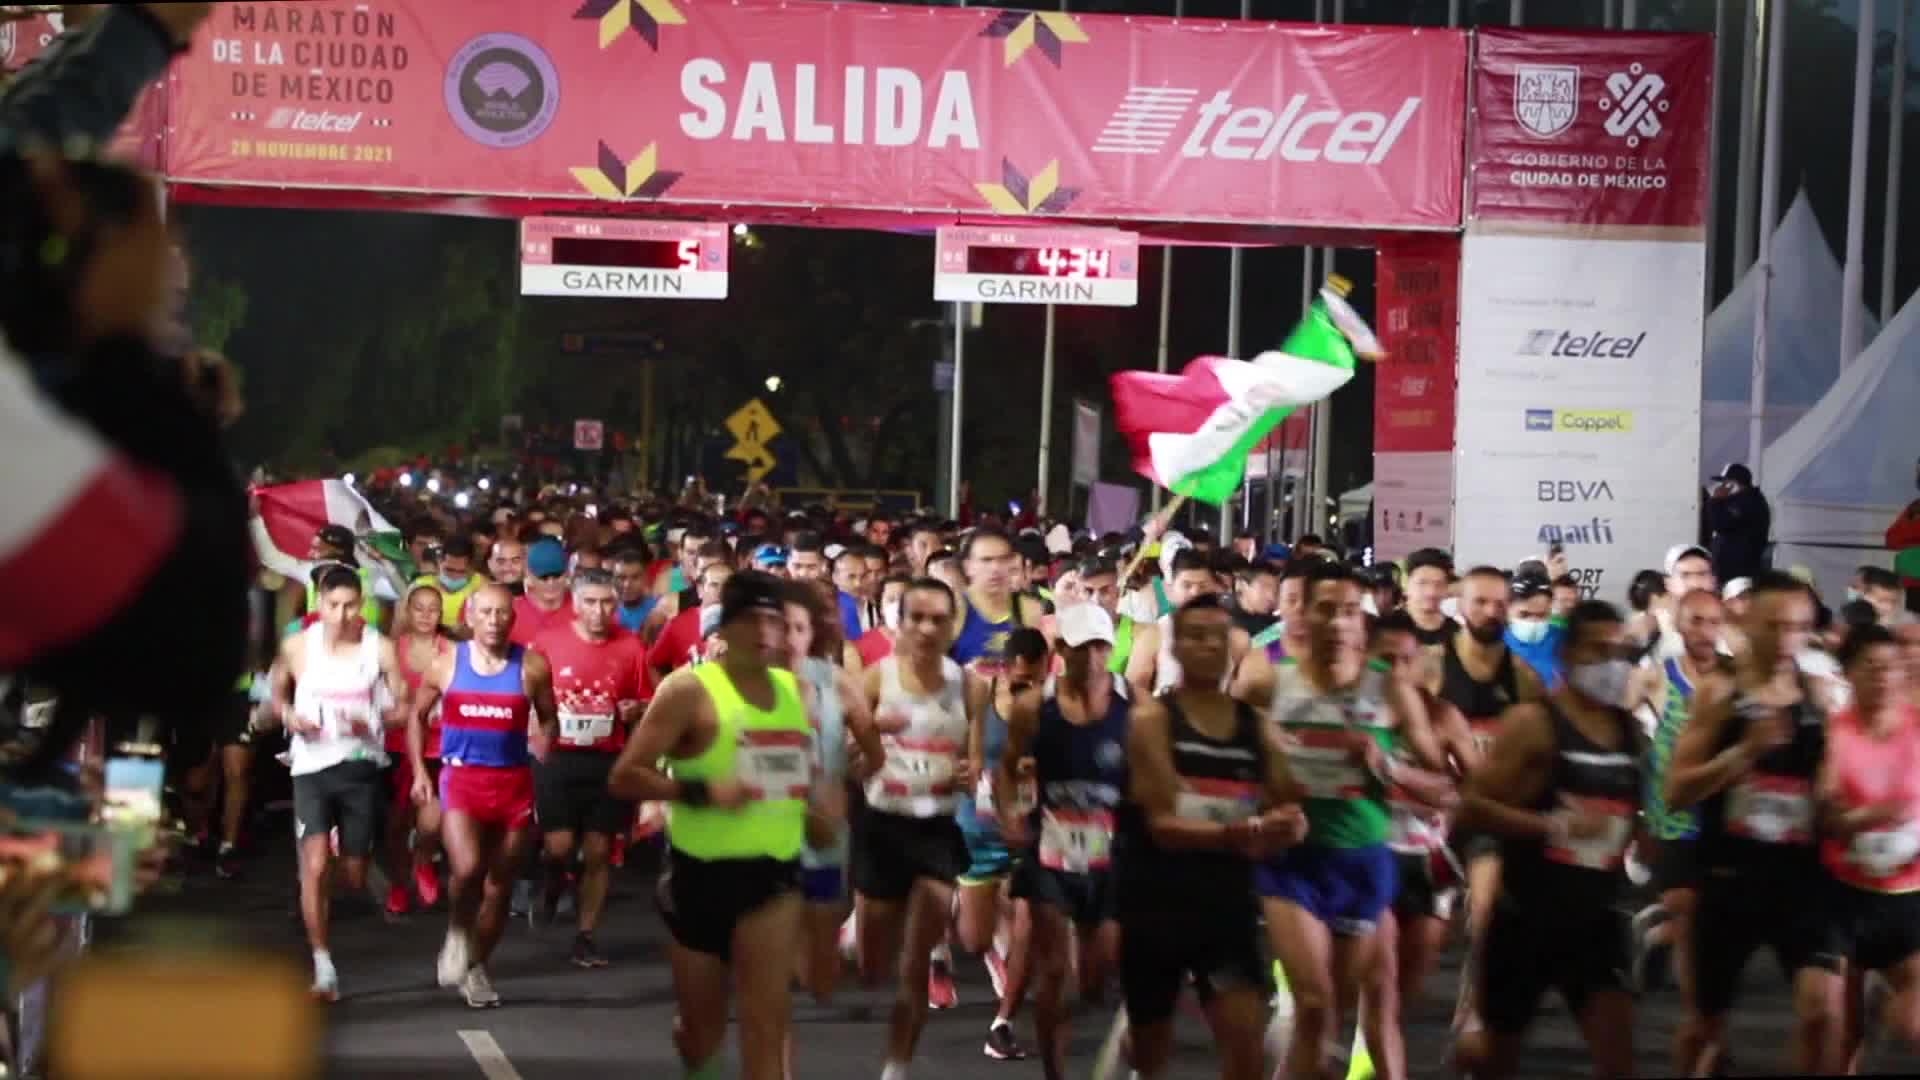 Participan 15.000 corredores en Maratón de la Ciudad de México, el principal maratón de América Latina